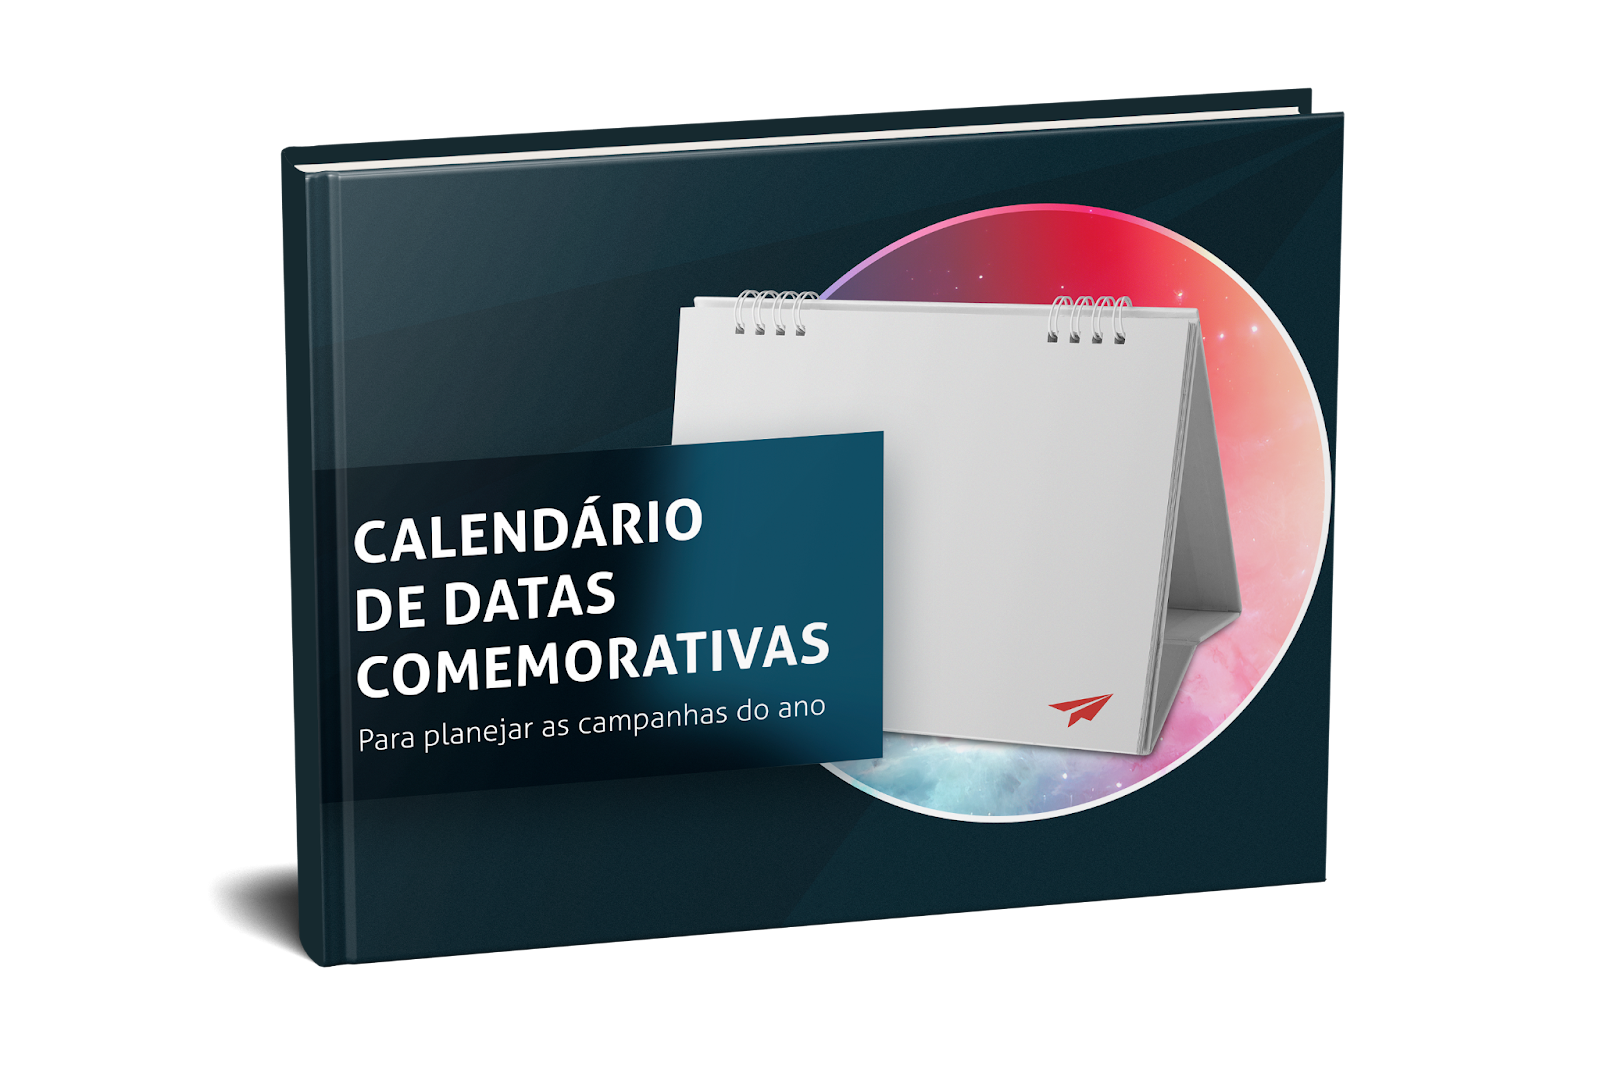 Ebook Calendário de Datas Comemorativas, localizado no conteúdo sobre gestão de redes sociais.